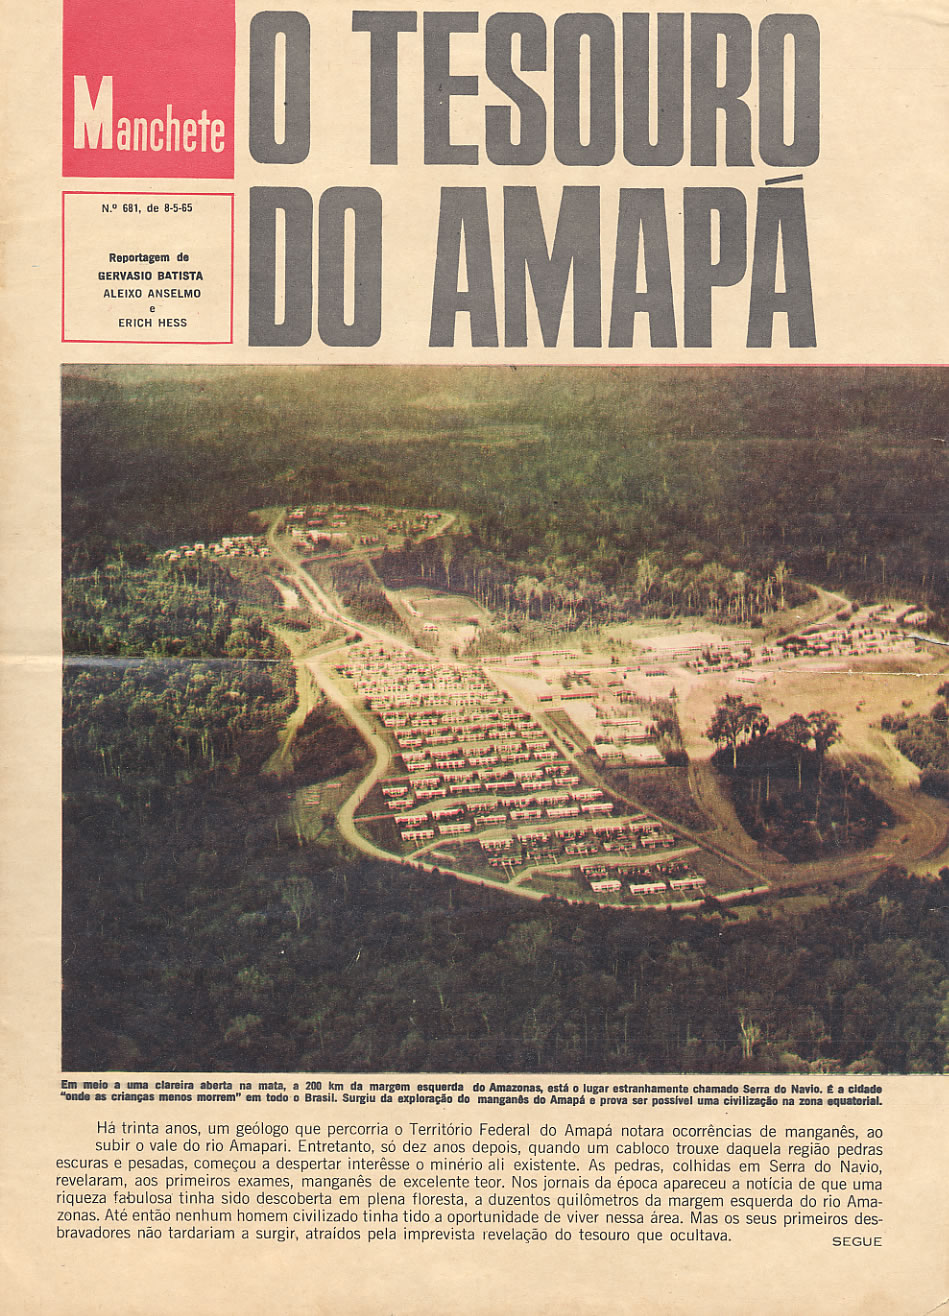 Capa de uma revista falando da mineração no Amapá